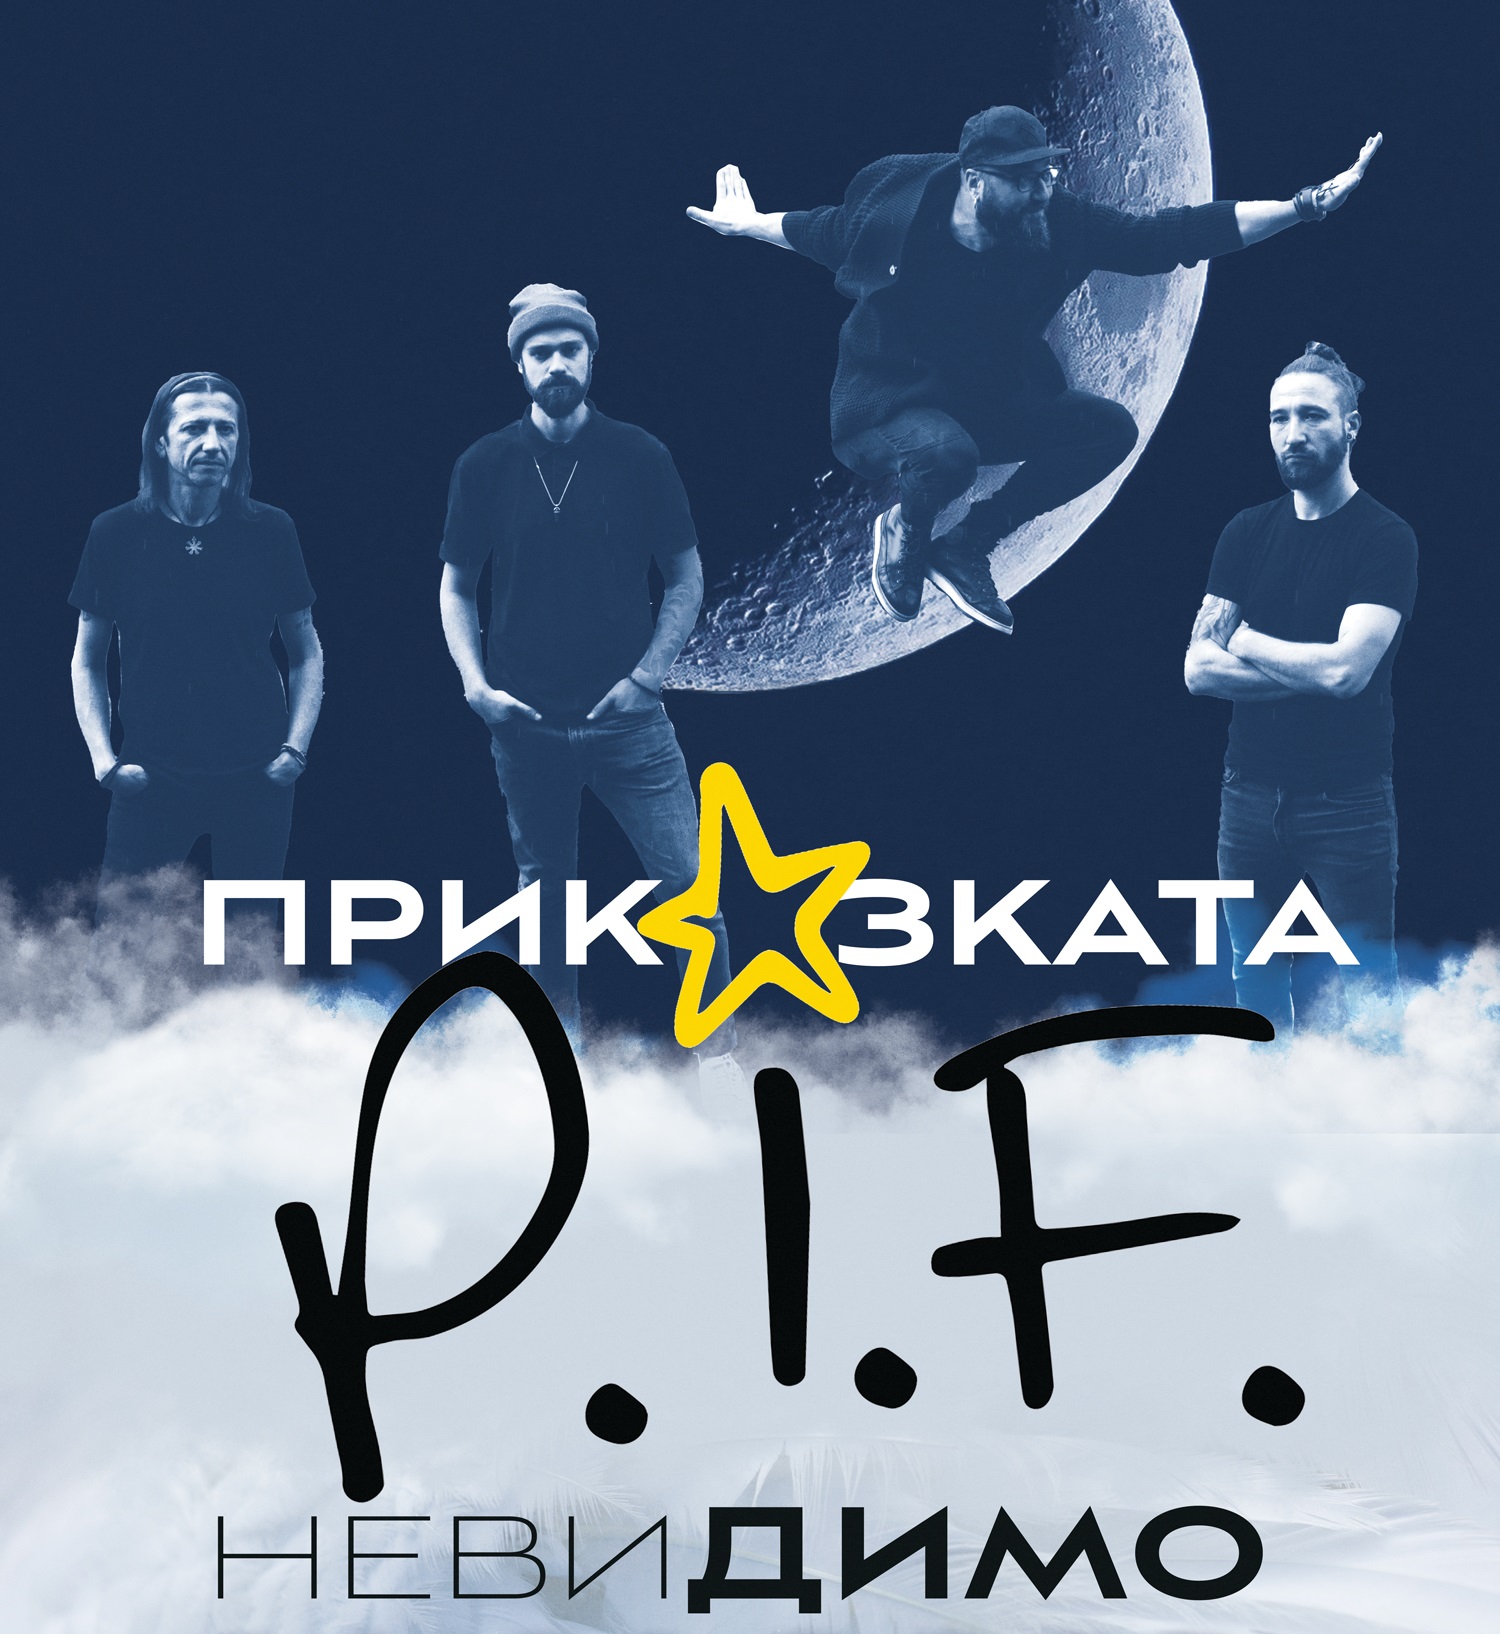 Приказката P.I.F. продължава с концерта „невиДИМО“